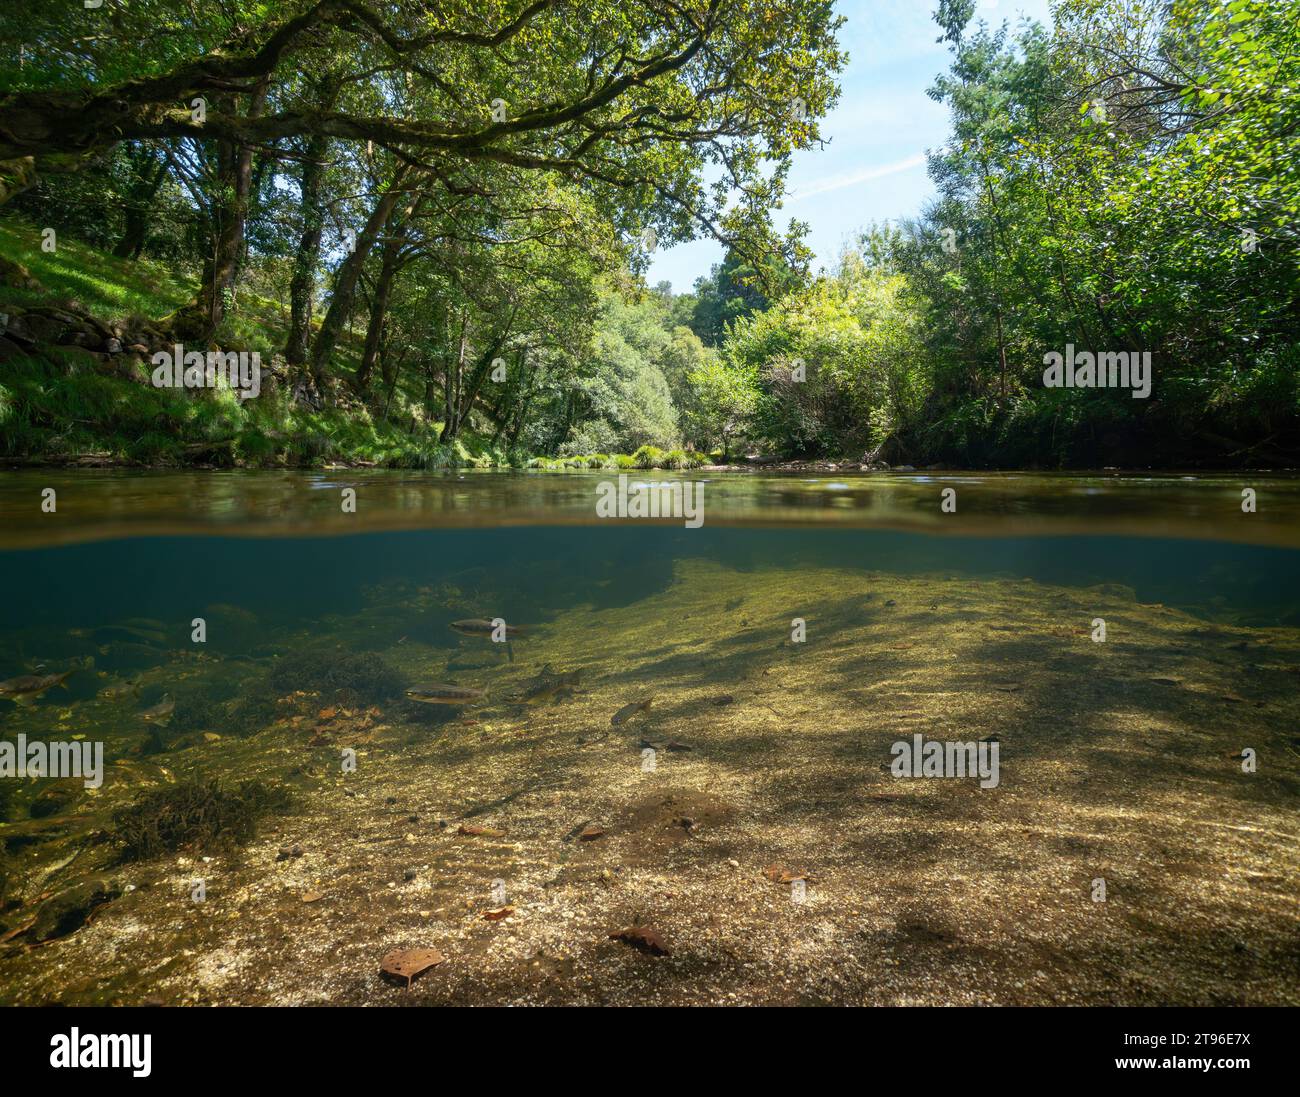 Rivière sauvage sous le feuillage des arbres avec des poissons de truite sous l'eau, vue sur et sous la surface de l'eau, scène naturelle, Espagne, Galice Banque D'Images